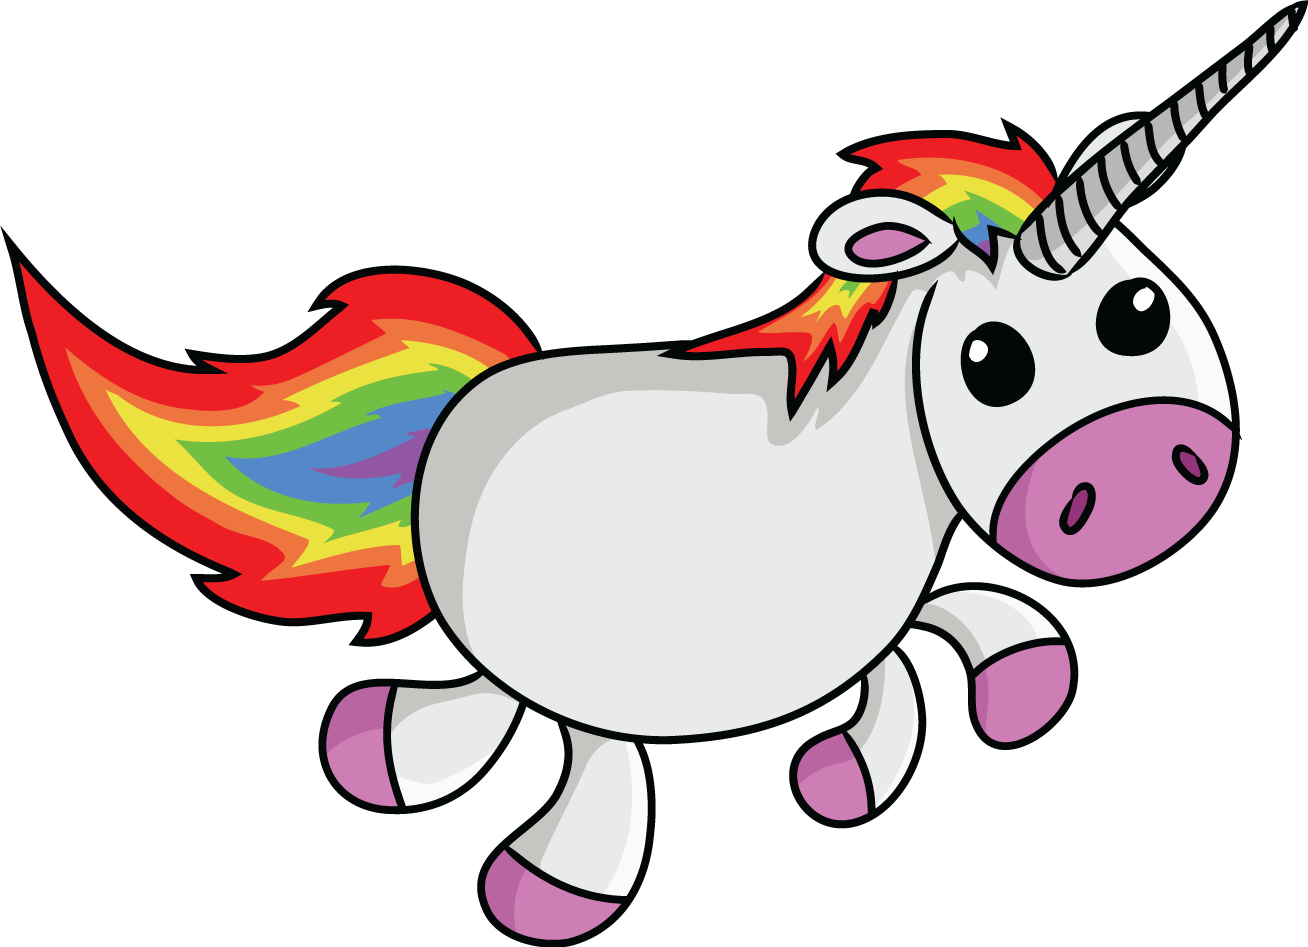 Download 21 pictures-of-cartoon-unicorns Cartoon-Unicorn-PNG-cartoon-unicorn-coloring-pages-cartoon-.jpg